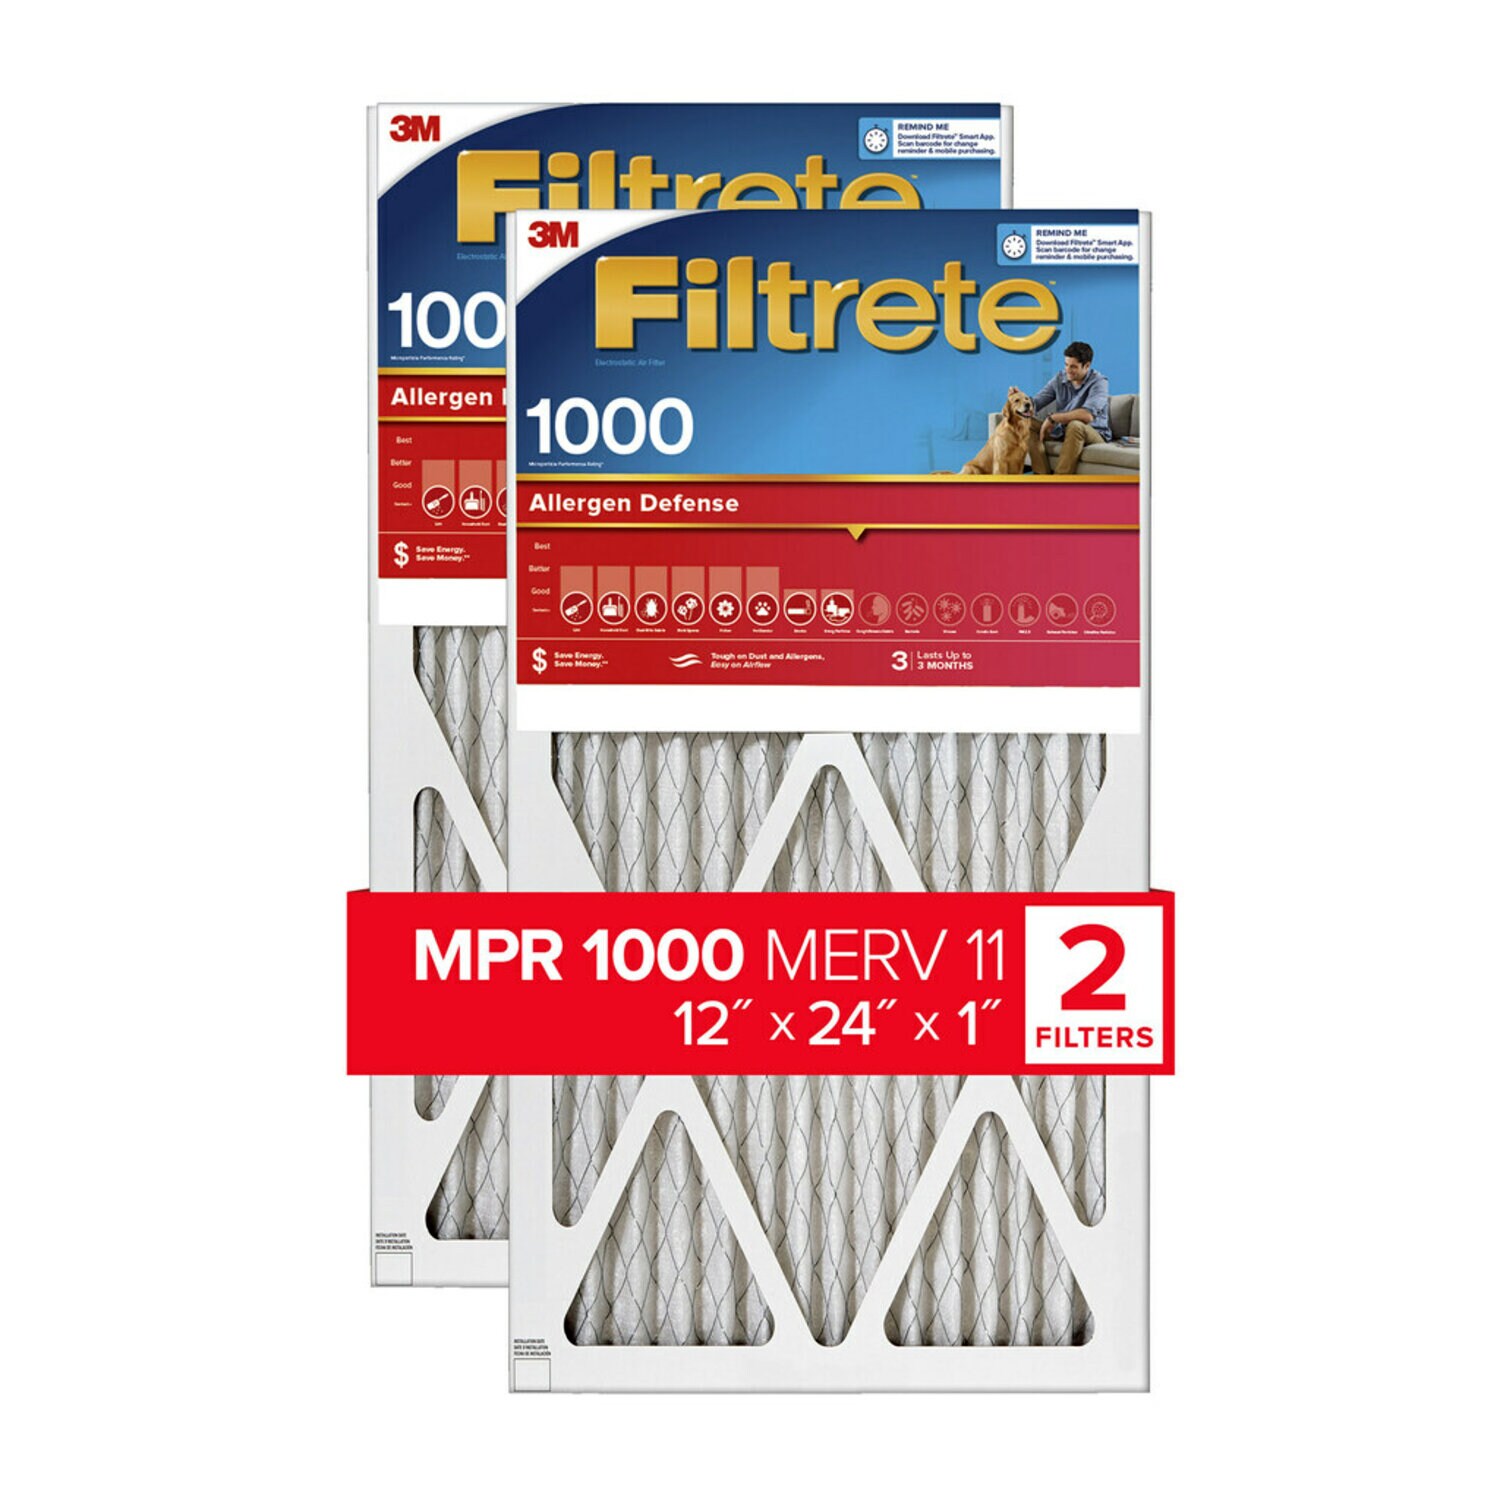 7100189280 - Filtrete Allergen Defense Air Filter, 1000 MPR, 9820-2PK-HDW, 12 in x
24 in x 1 in (30,4 cm x 60,9 cm x 2,5 cm)